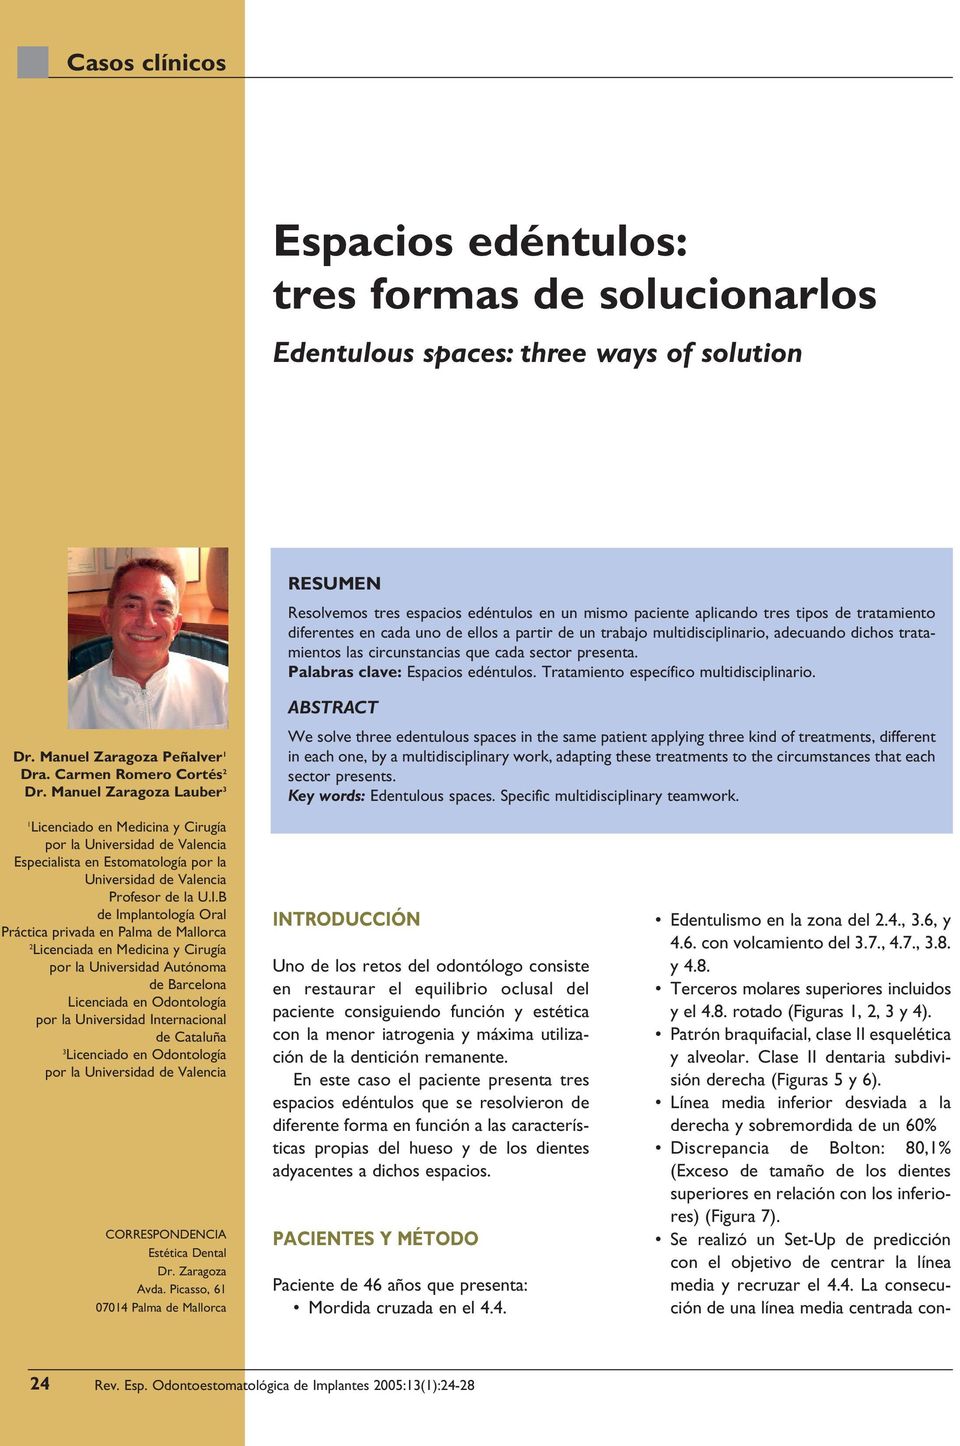 Tratamiento específico multidisciplinario. Dr. Manuel Zaragoza Peñalver 1 Dra. Carmen Romero Cortés 2 Dr.